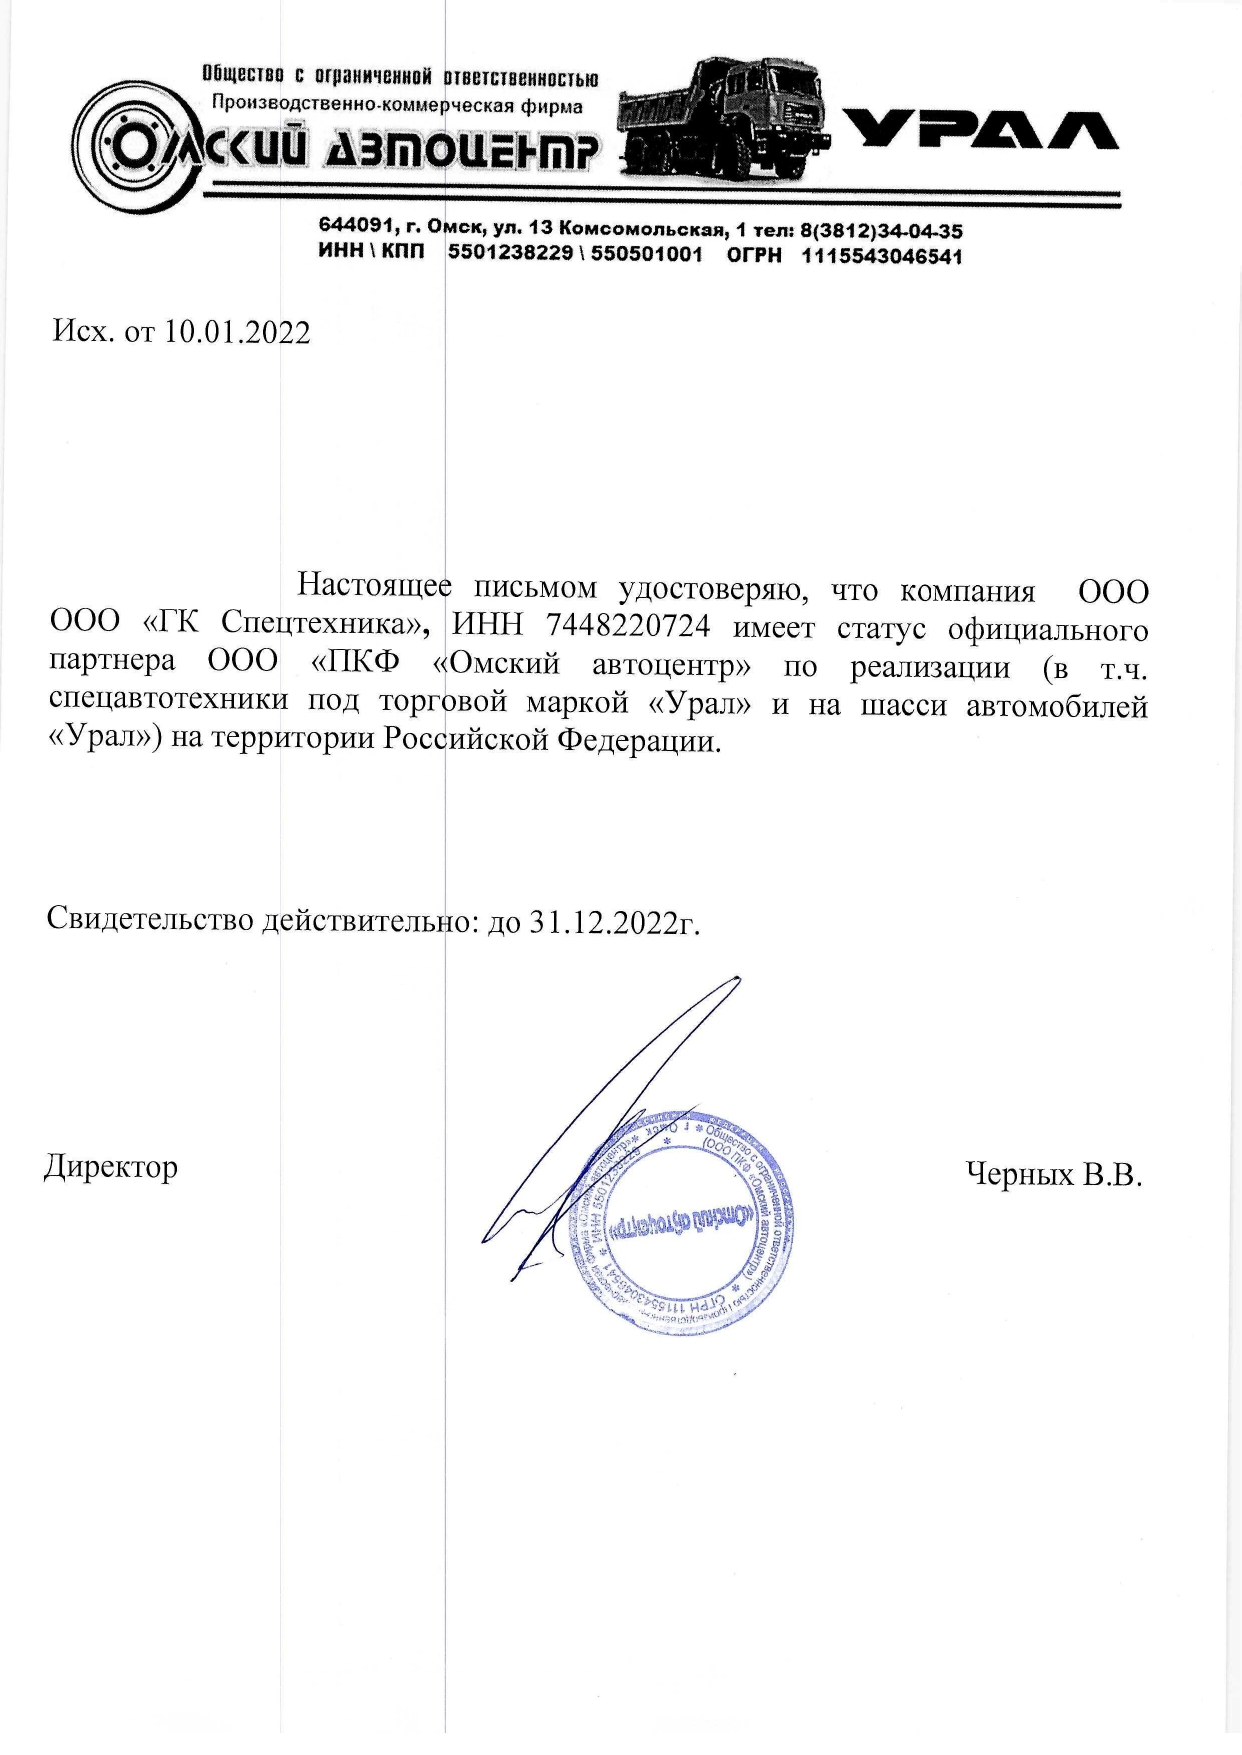 Сертификат "Омский Автоцентр" от 2022 ГК Спецтехника